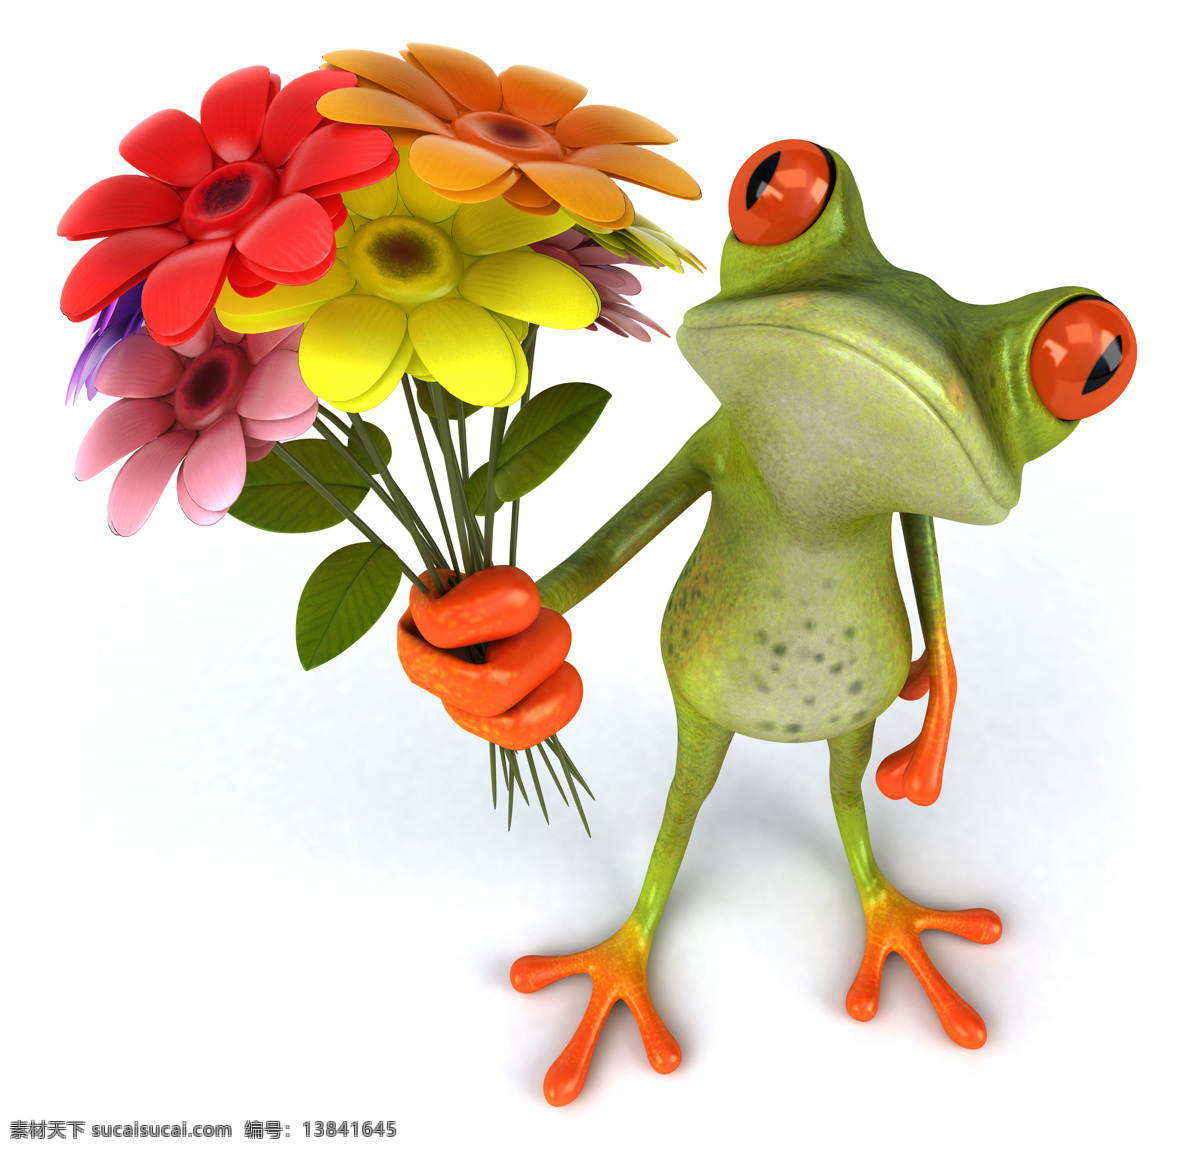 3d 青蛙 3d设计 爱情 花卉 情人节 生物世界 鲜花 3d青蛙 示爱 野生动物 3d模型素材 其他3d模型